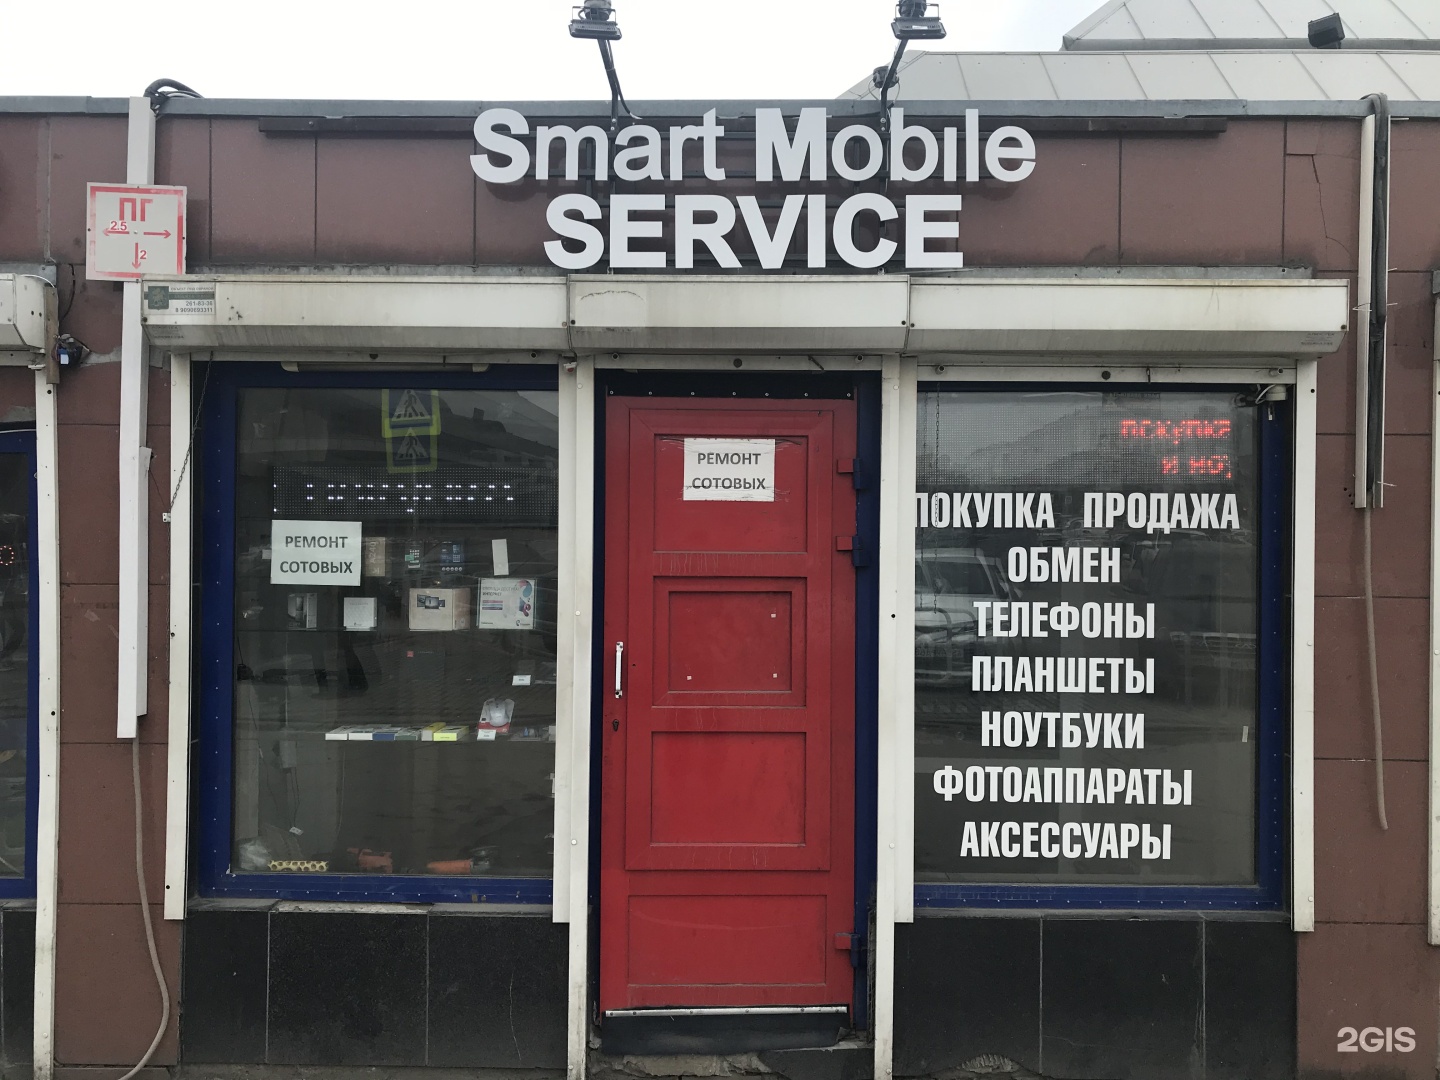 Номер телефона синегорье челябинск. Магазин конфискат в Челябинске около Синегорья.